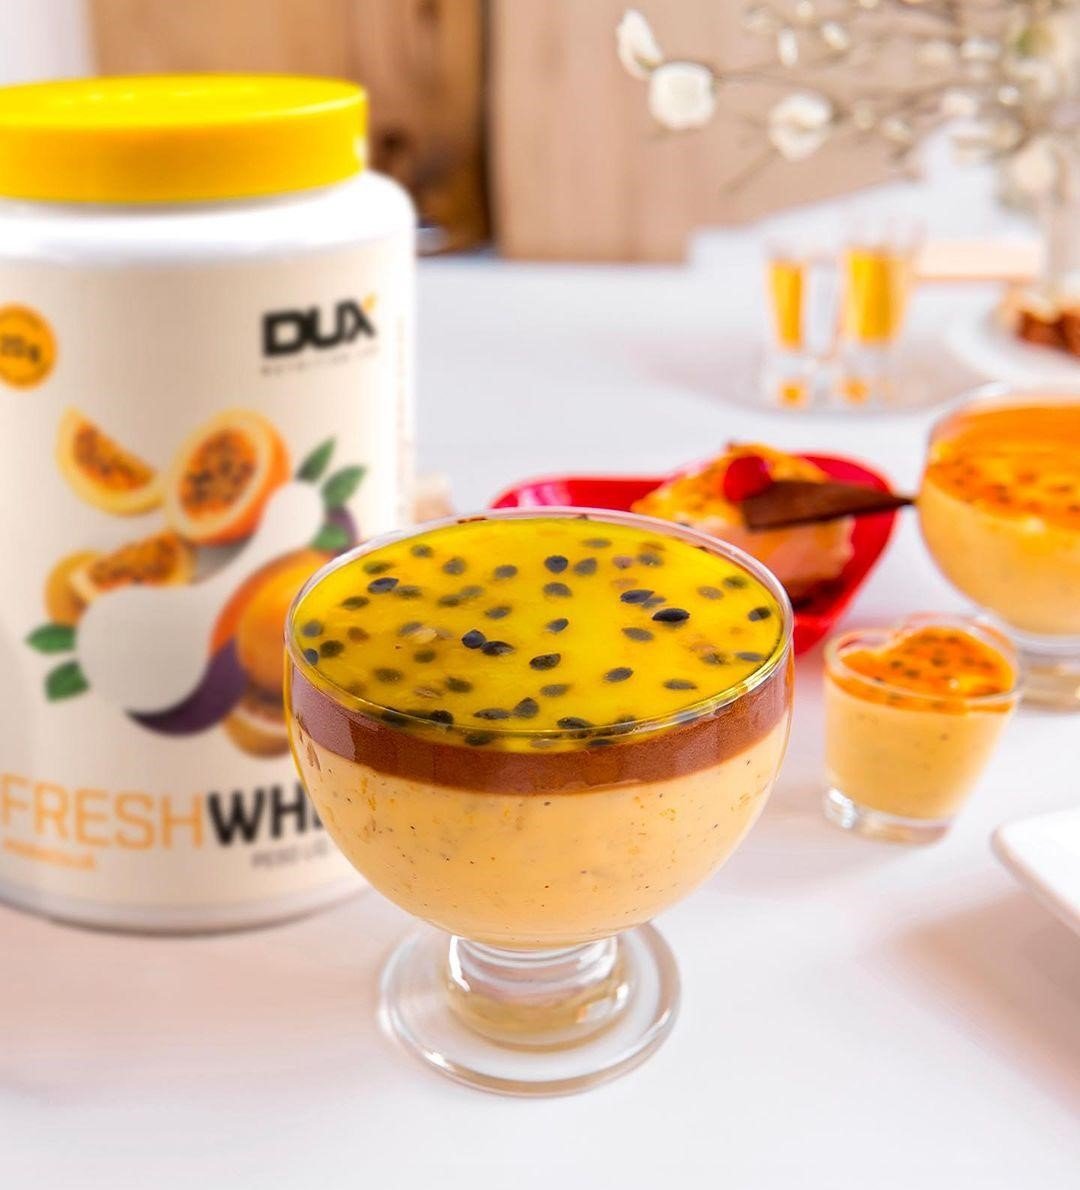 DUX Nutrition desenvolveu receita de Taça de Maracujá para refrescar o verão de forma saudável e saborosa